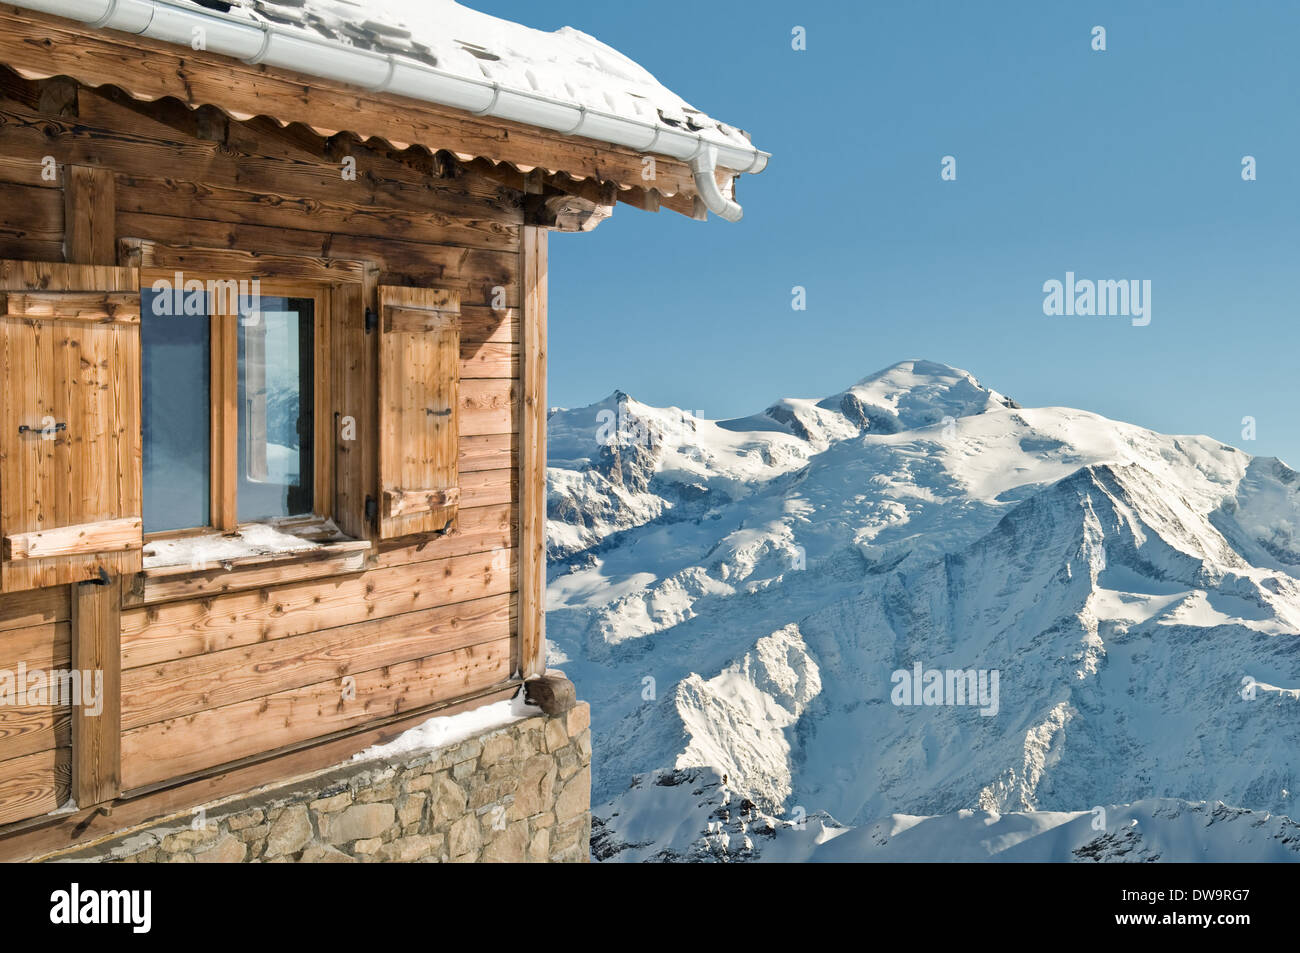 Vue sur un montainand neige ciel bleu d'un chalet Banque D'Images